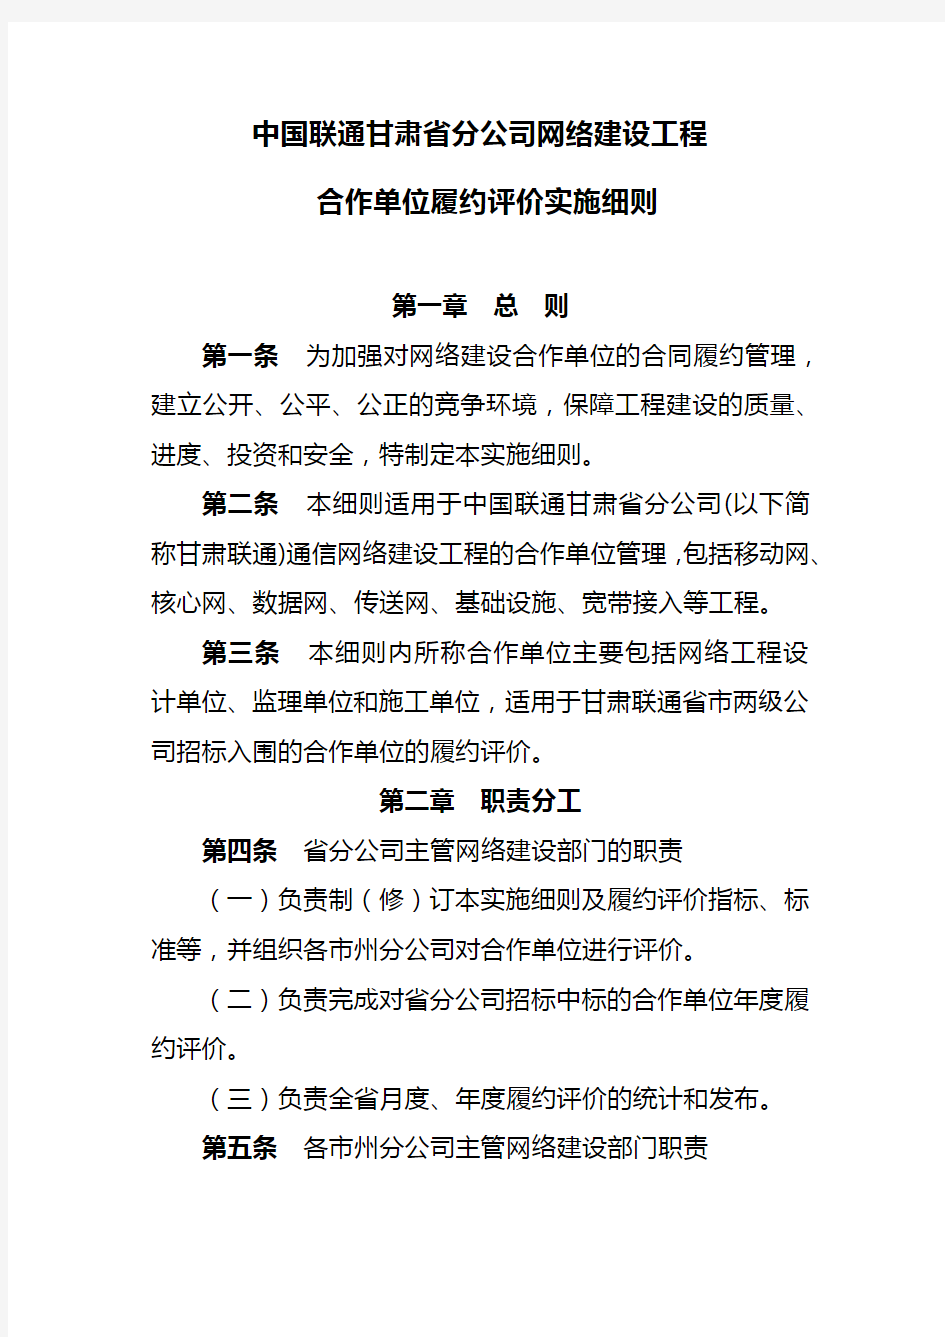 中国联通甘肃省分公司网络建设工程合作单位履约评价实施细则